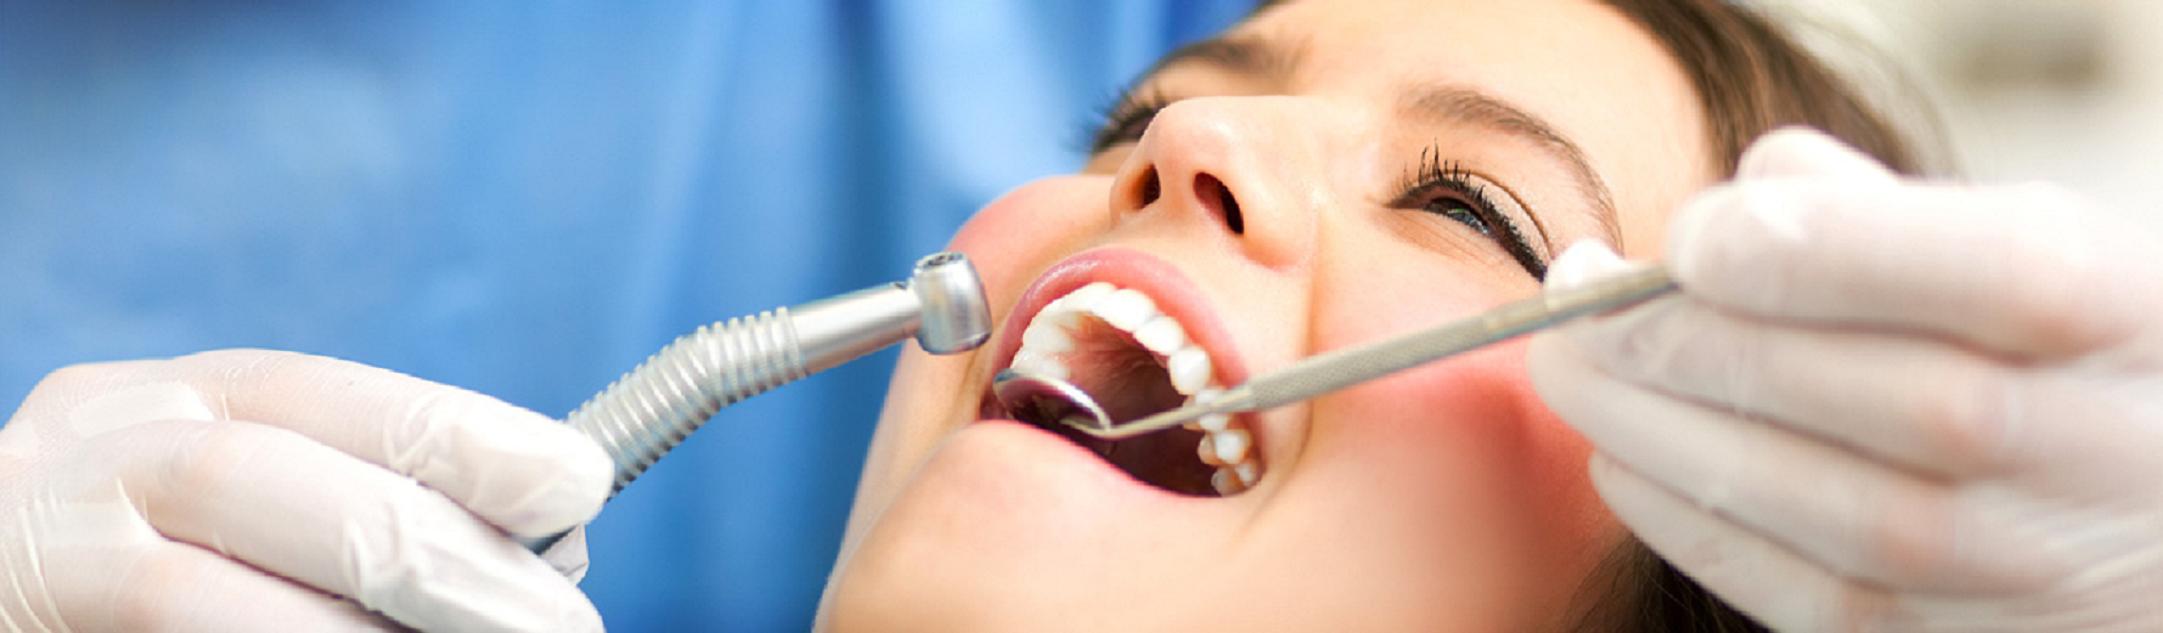 Formation en implantologie dentaire